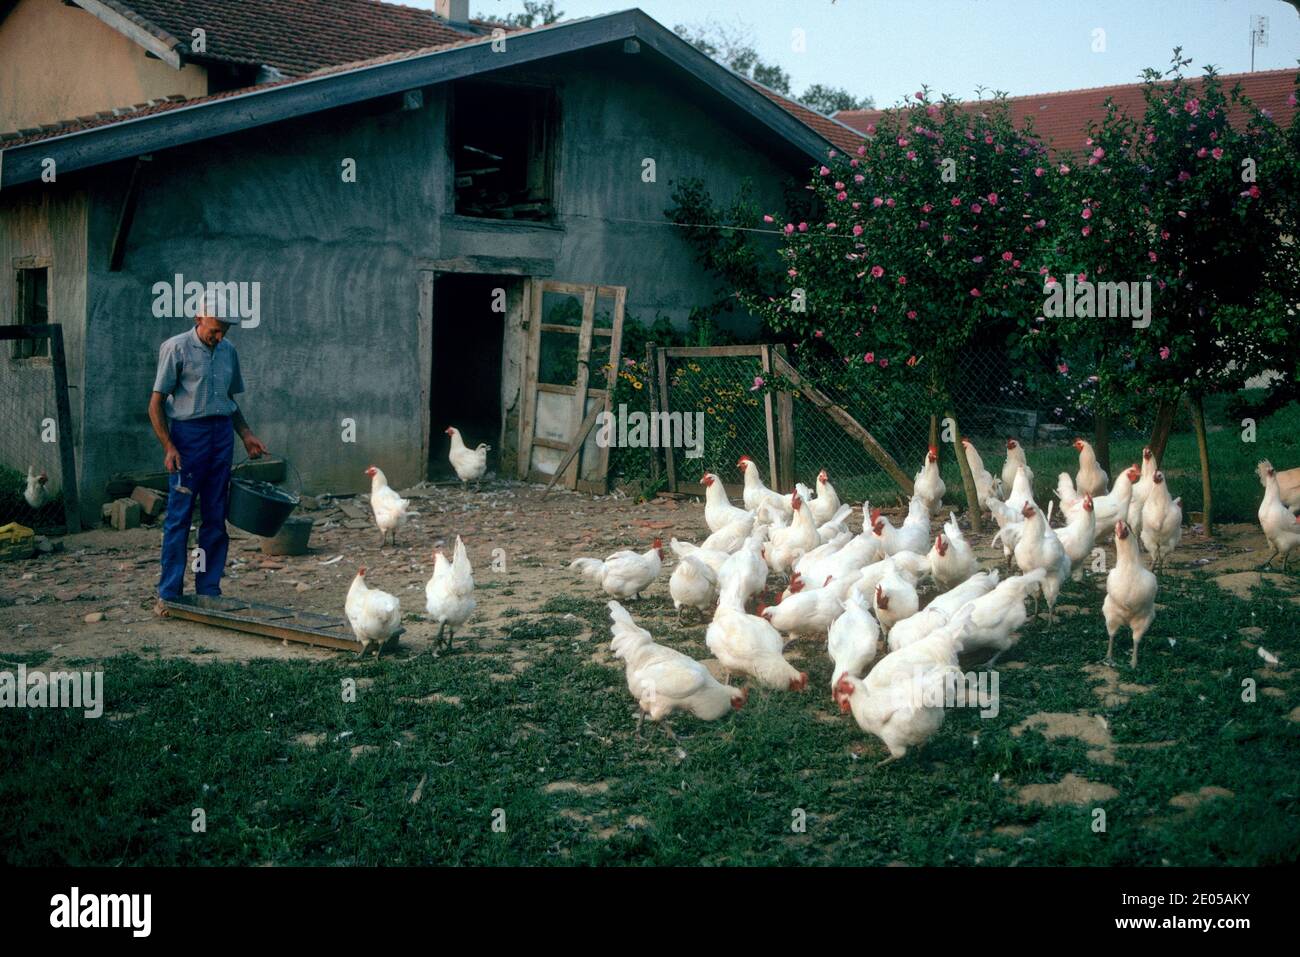 Fermier se nourrit de son poulet Bresse, Bresse, France Banque D'Images